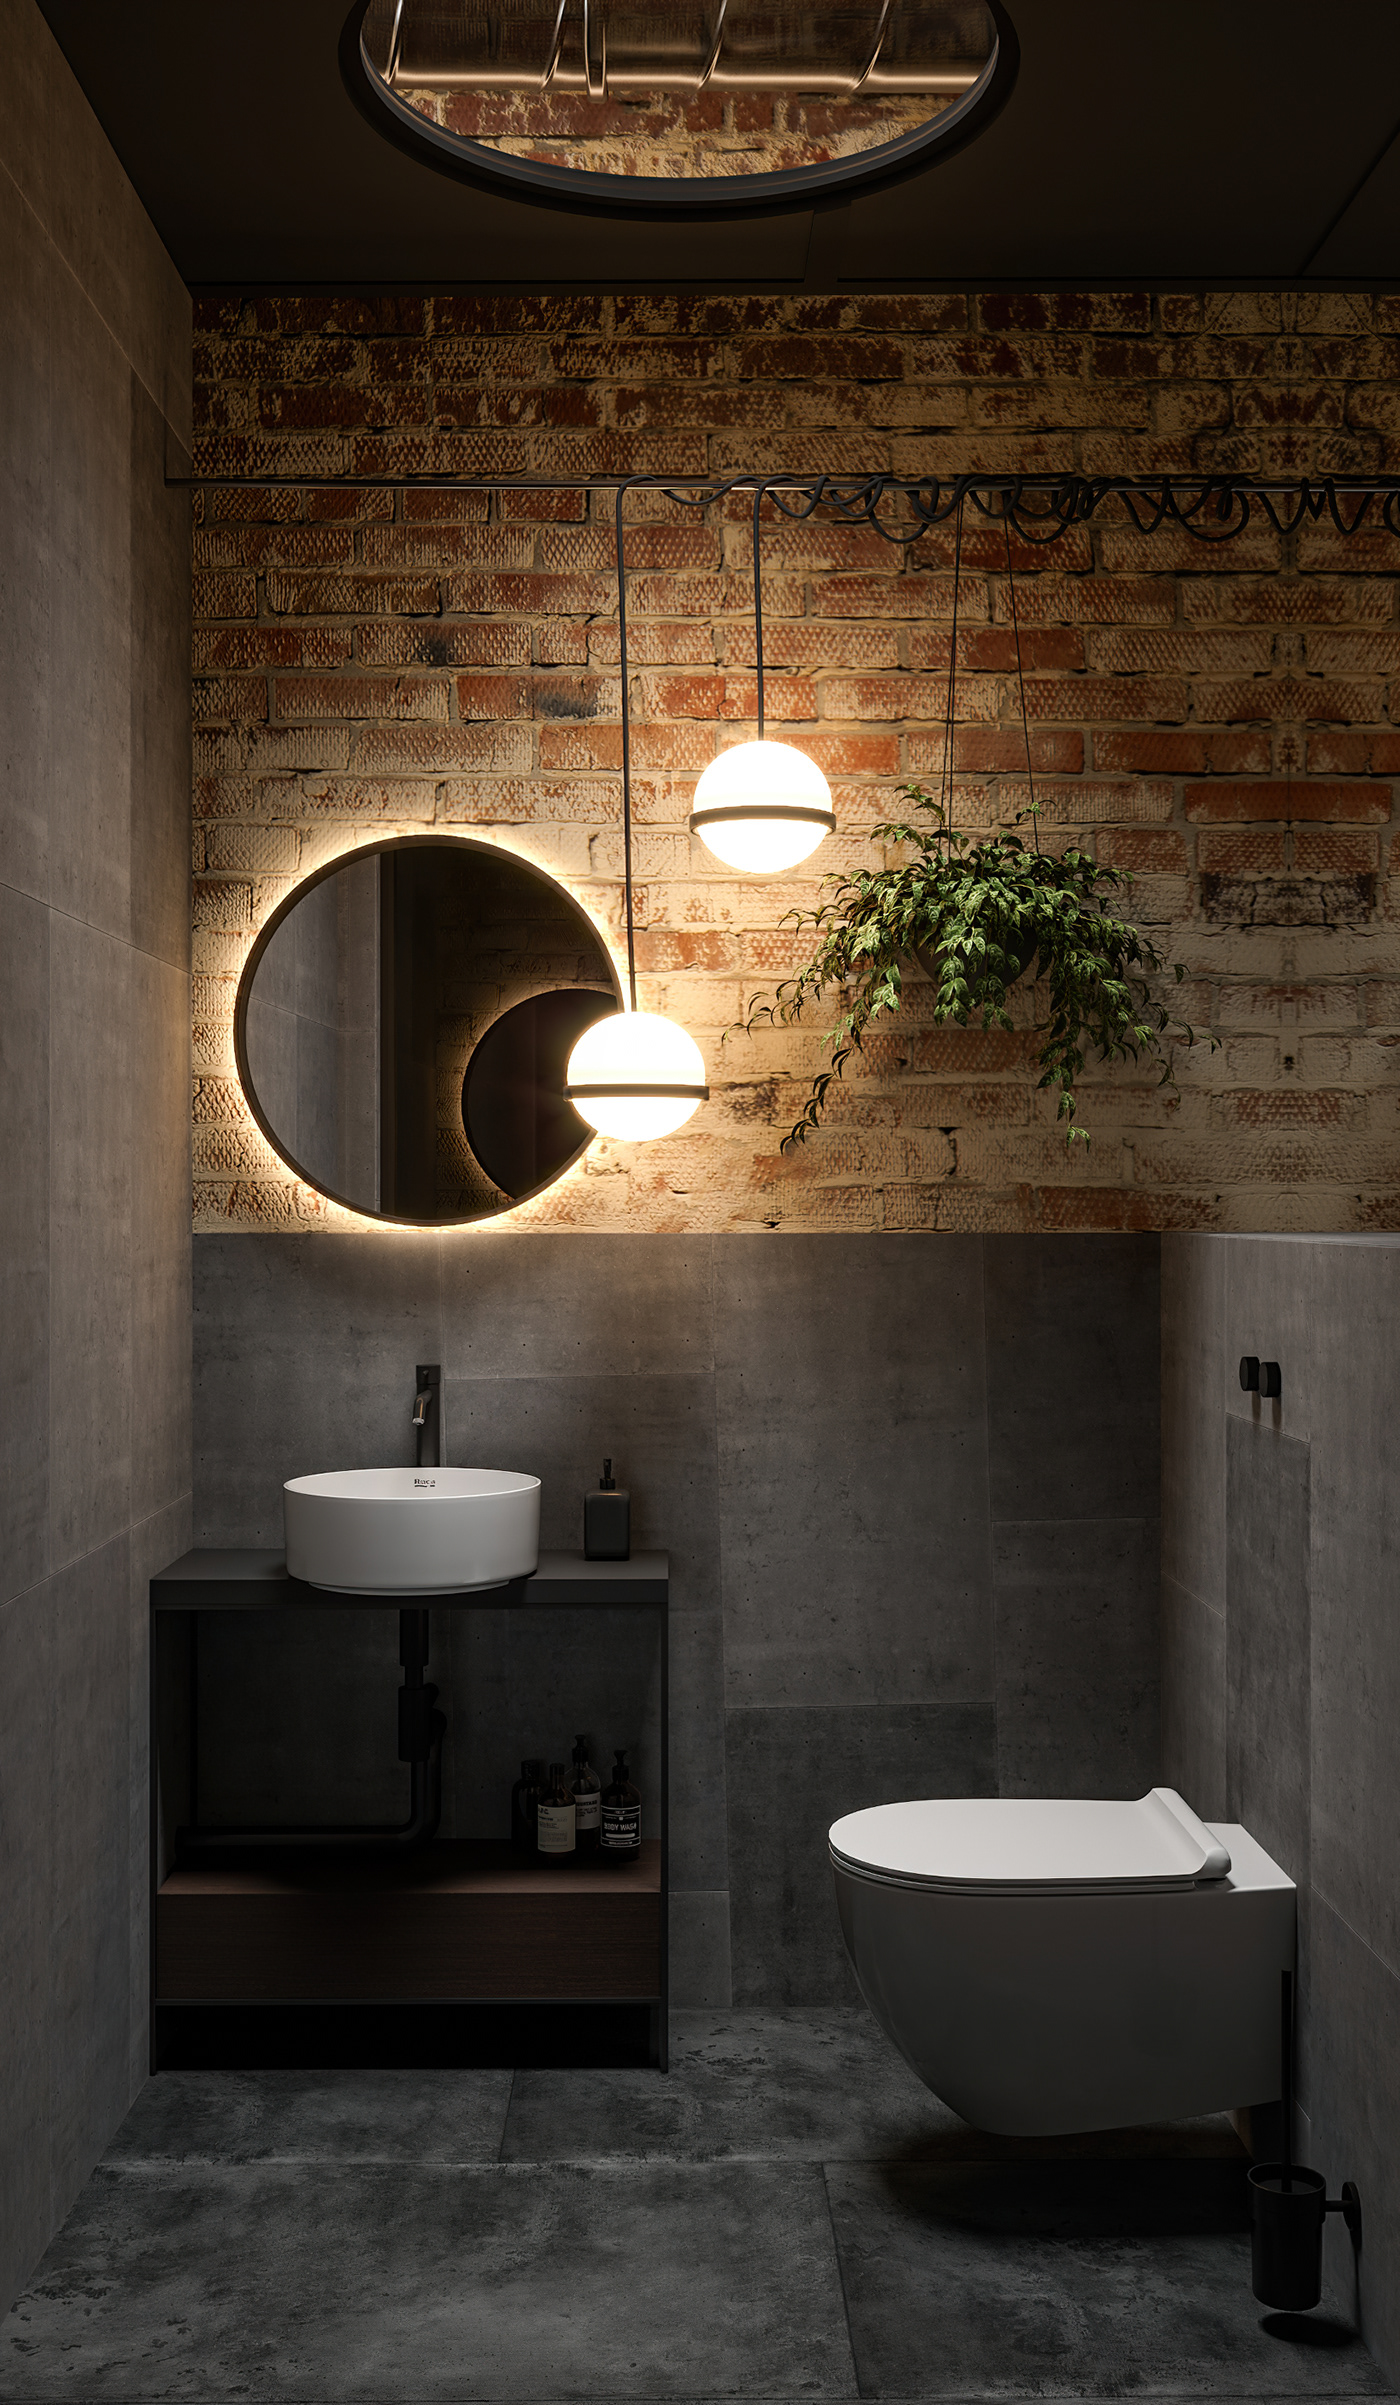 3ds max architecture bathroom bathroom design corona Interior interior design  Render visualization wall